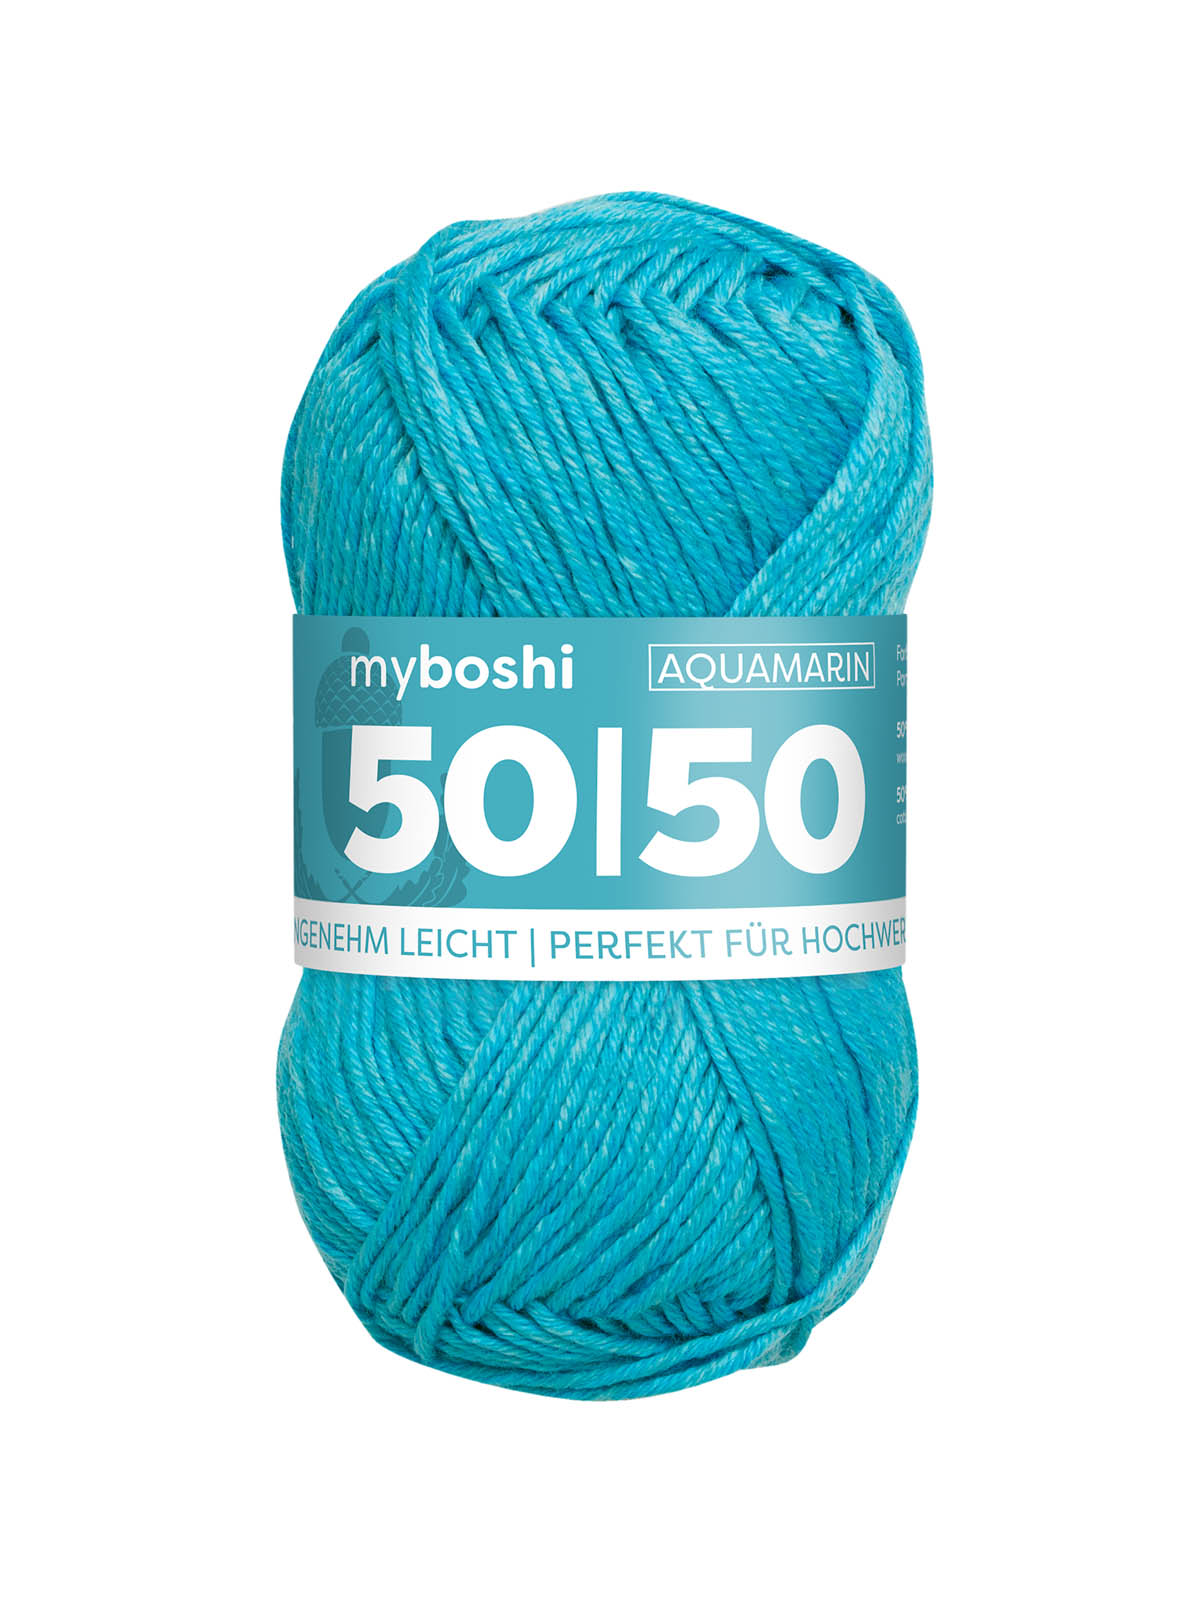 50/50 myboshi, Farbe aquamarine 969